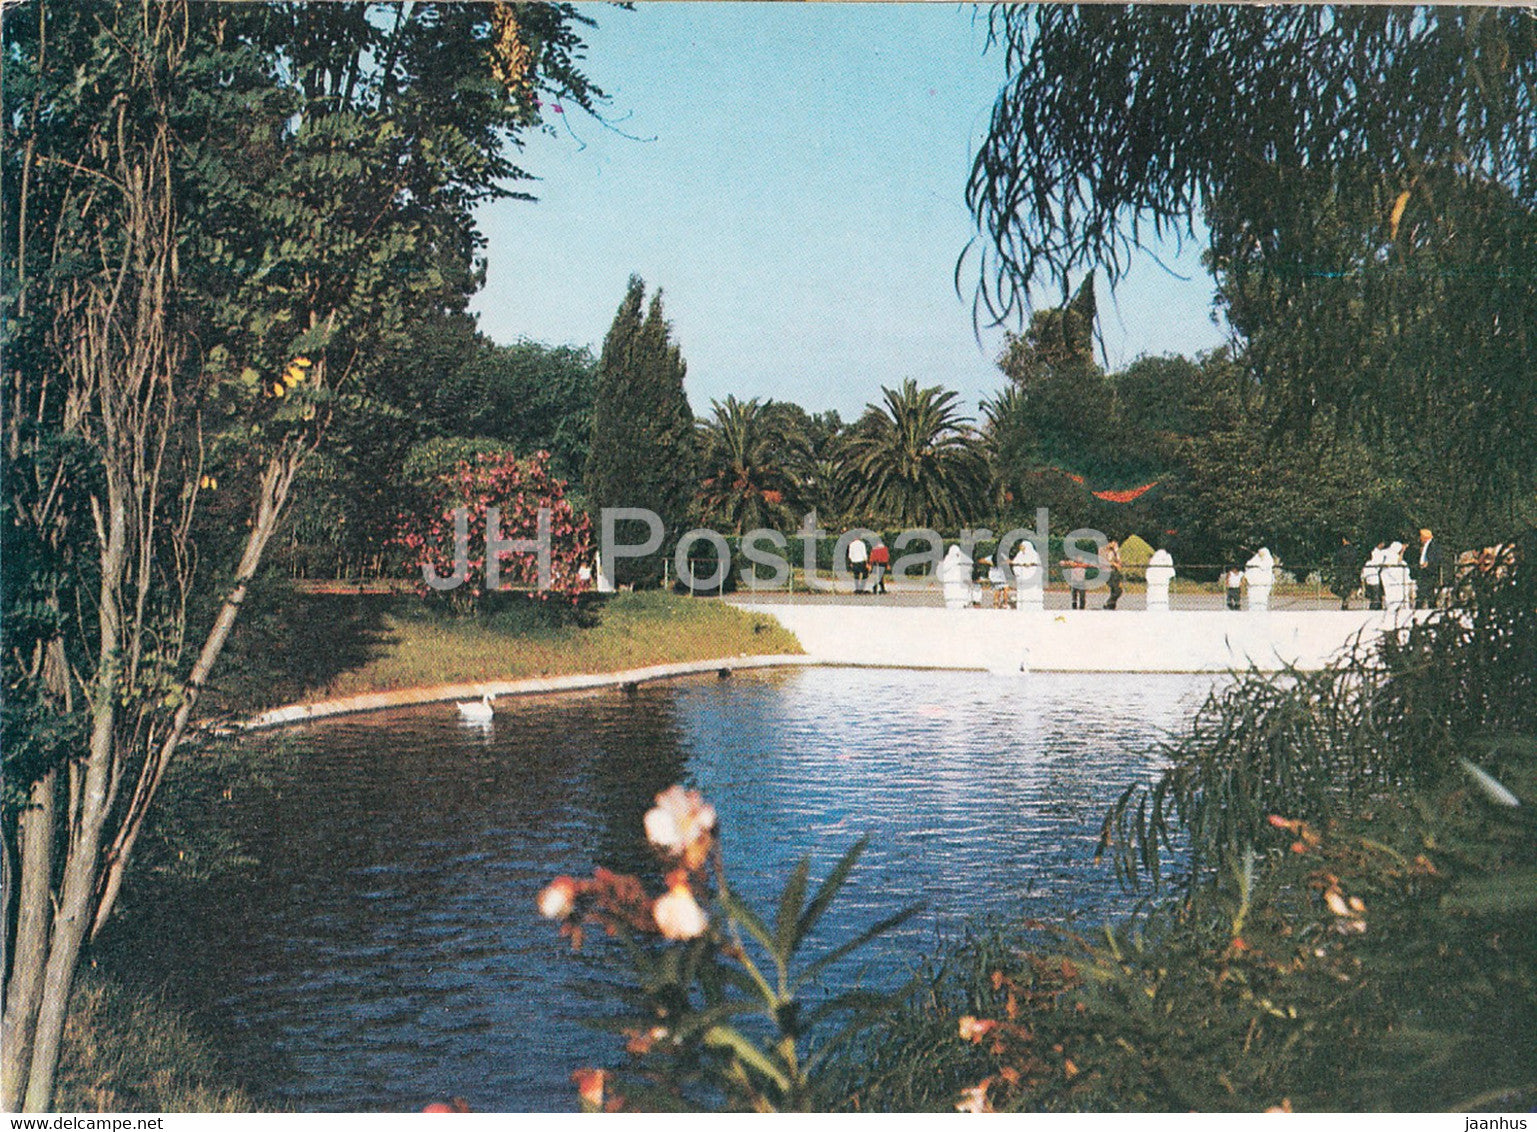 Oran - Le Jardin Municipal - garden - Algeria - unused - JH Postcards